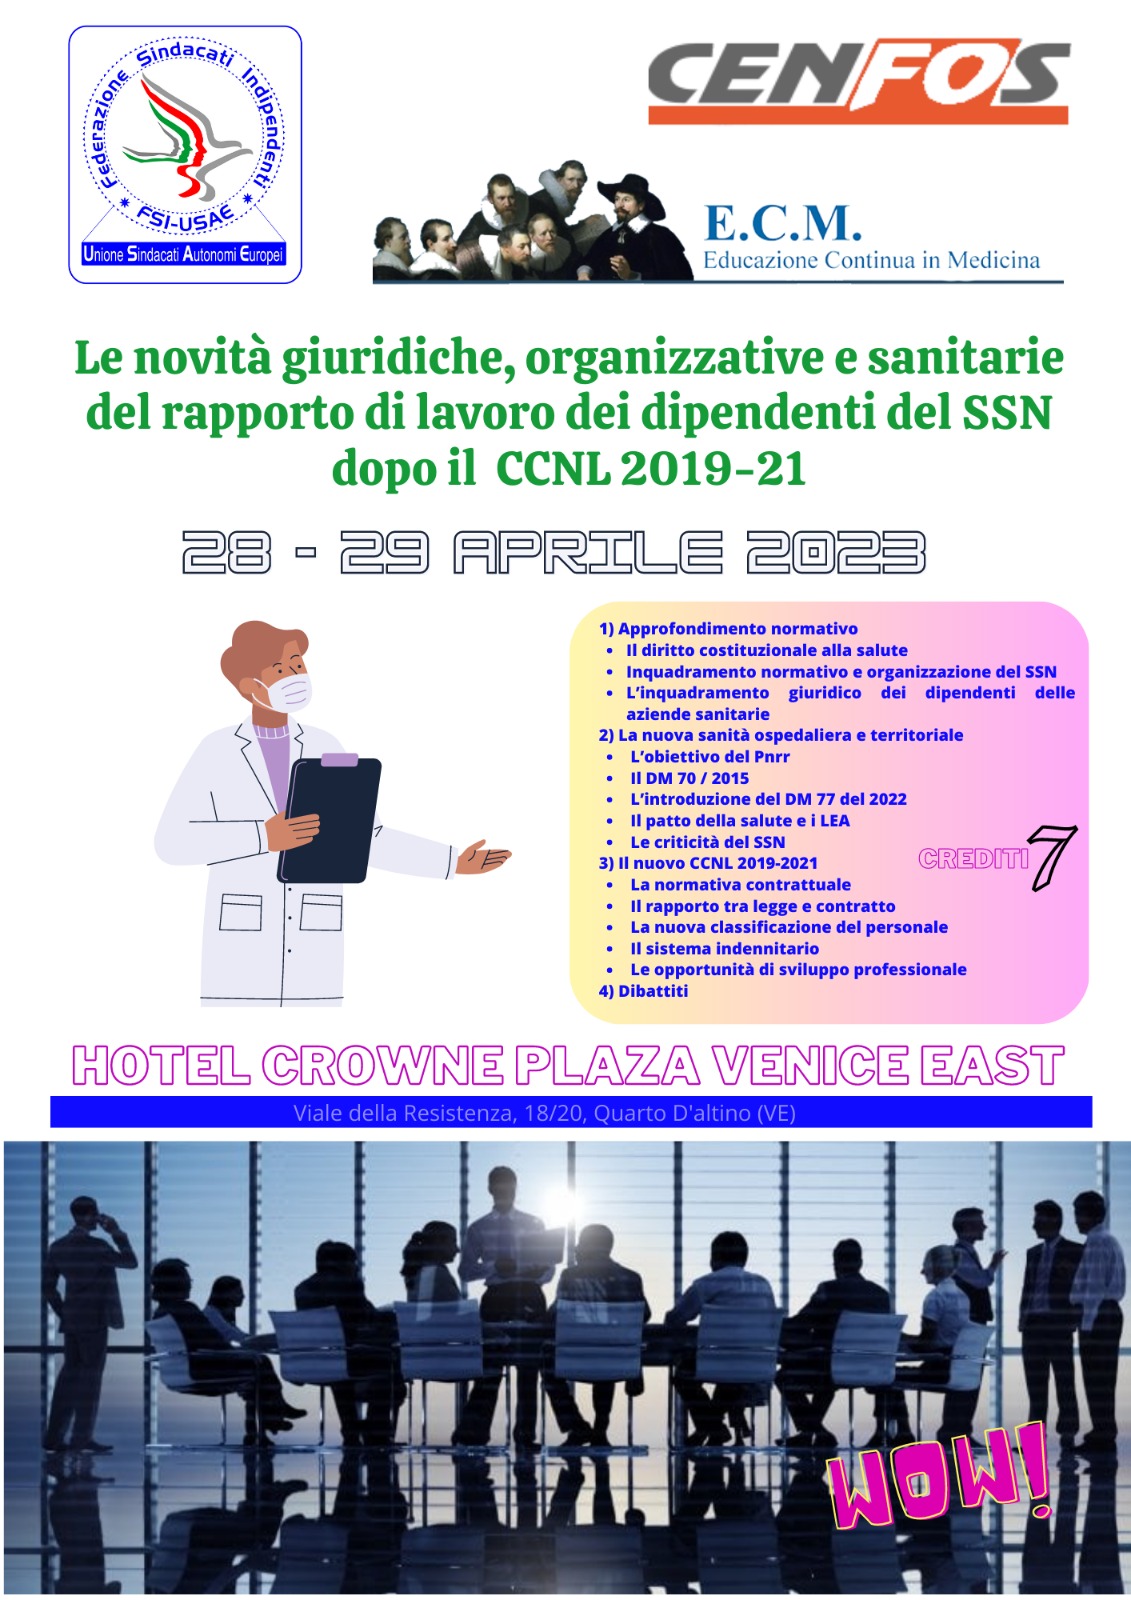 Le novità giuridiche, organizzative e sanitarie del rapporto di lavoro dei dipendenti del SSN